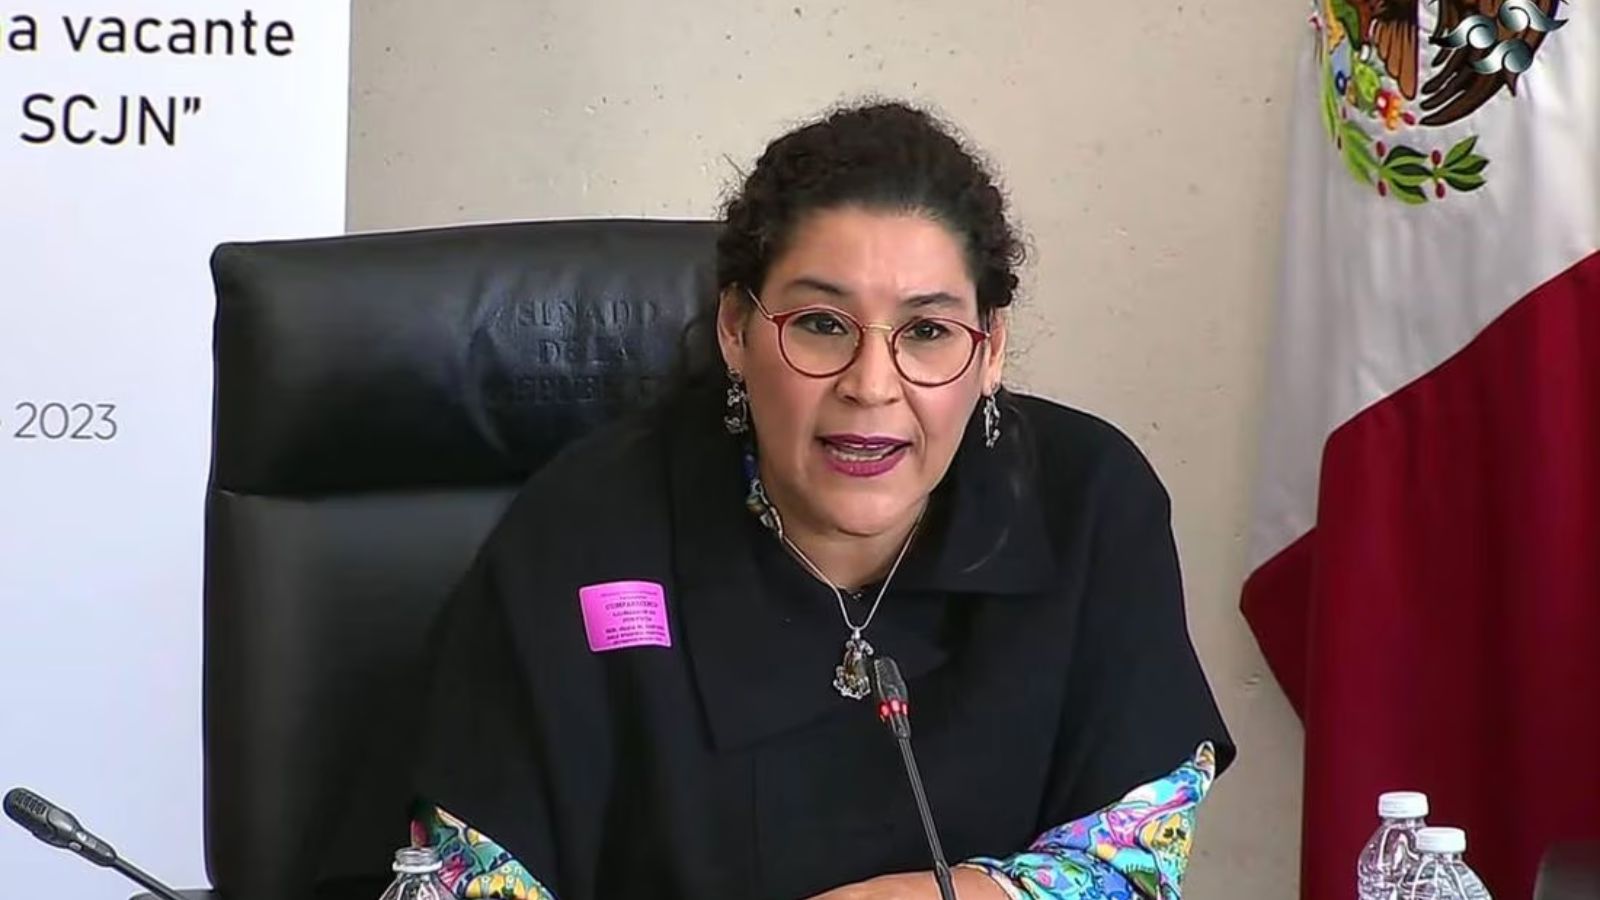 Lenia Batres es la nueva ministra de la SCJN elegida por AMLO